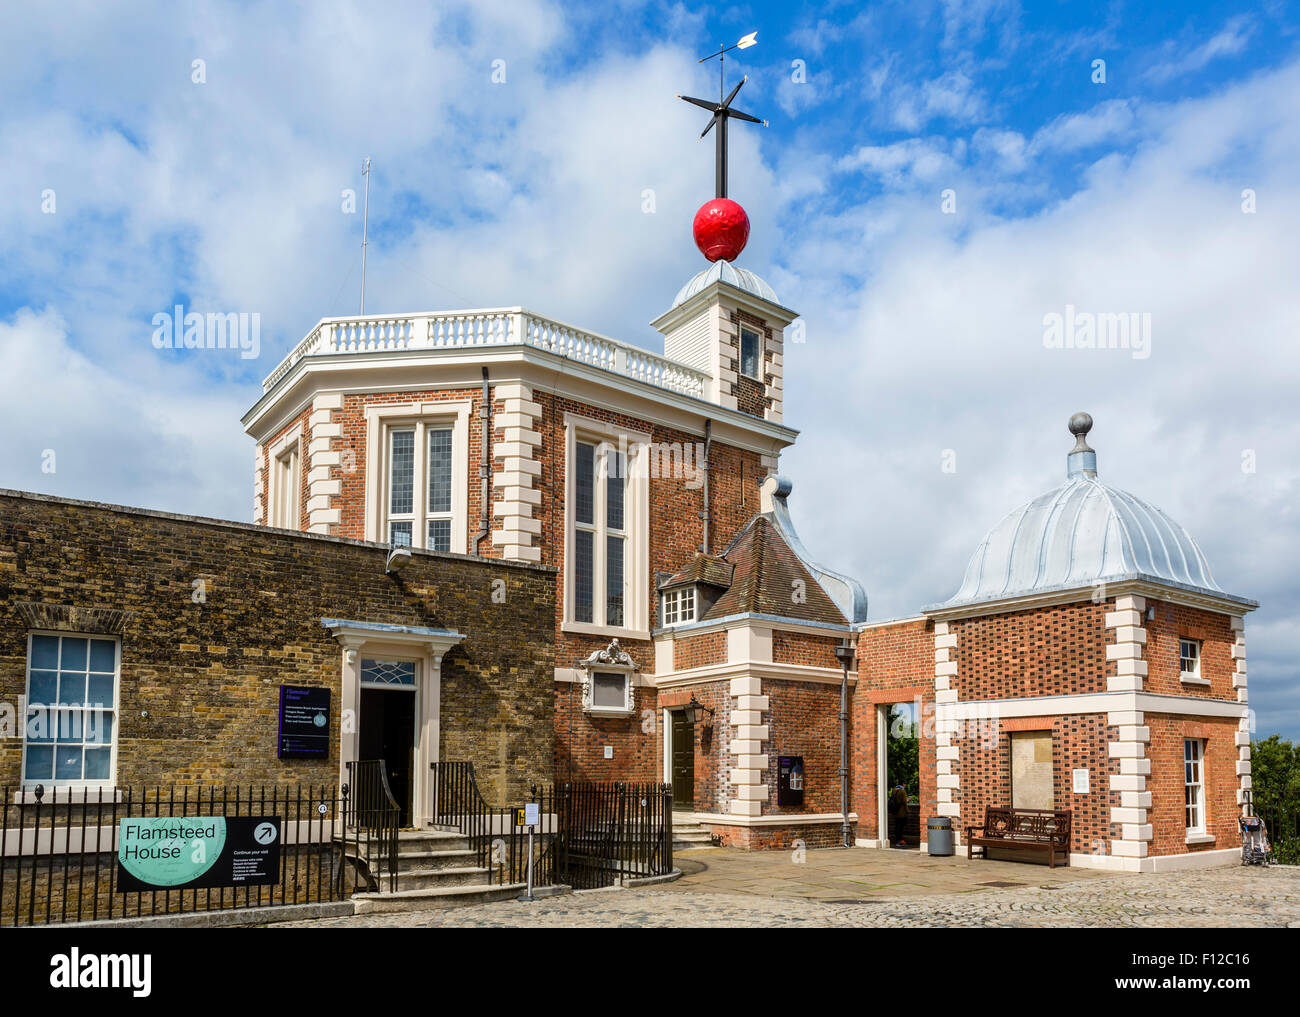 L'Observatoire Royal de Greenwich (Maison) de Flamsteed, avec la red boule de temps sur le toit, London, England, UK Banque D'Images